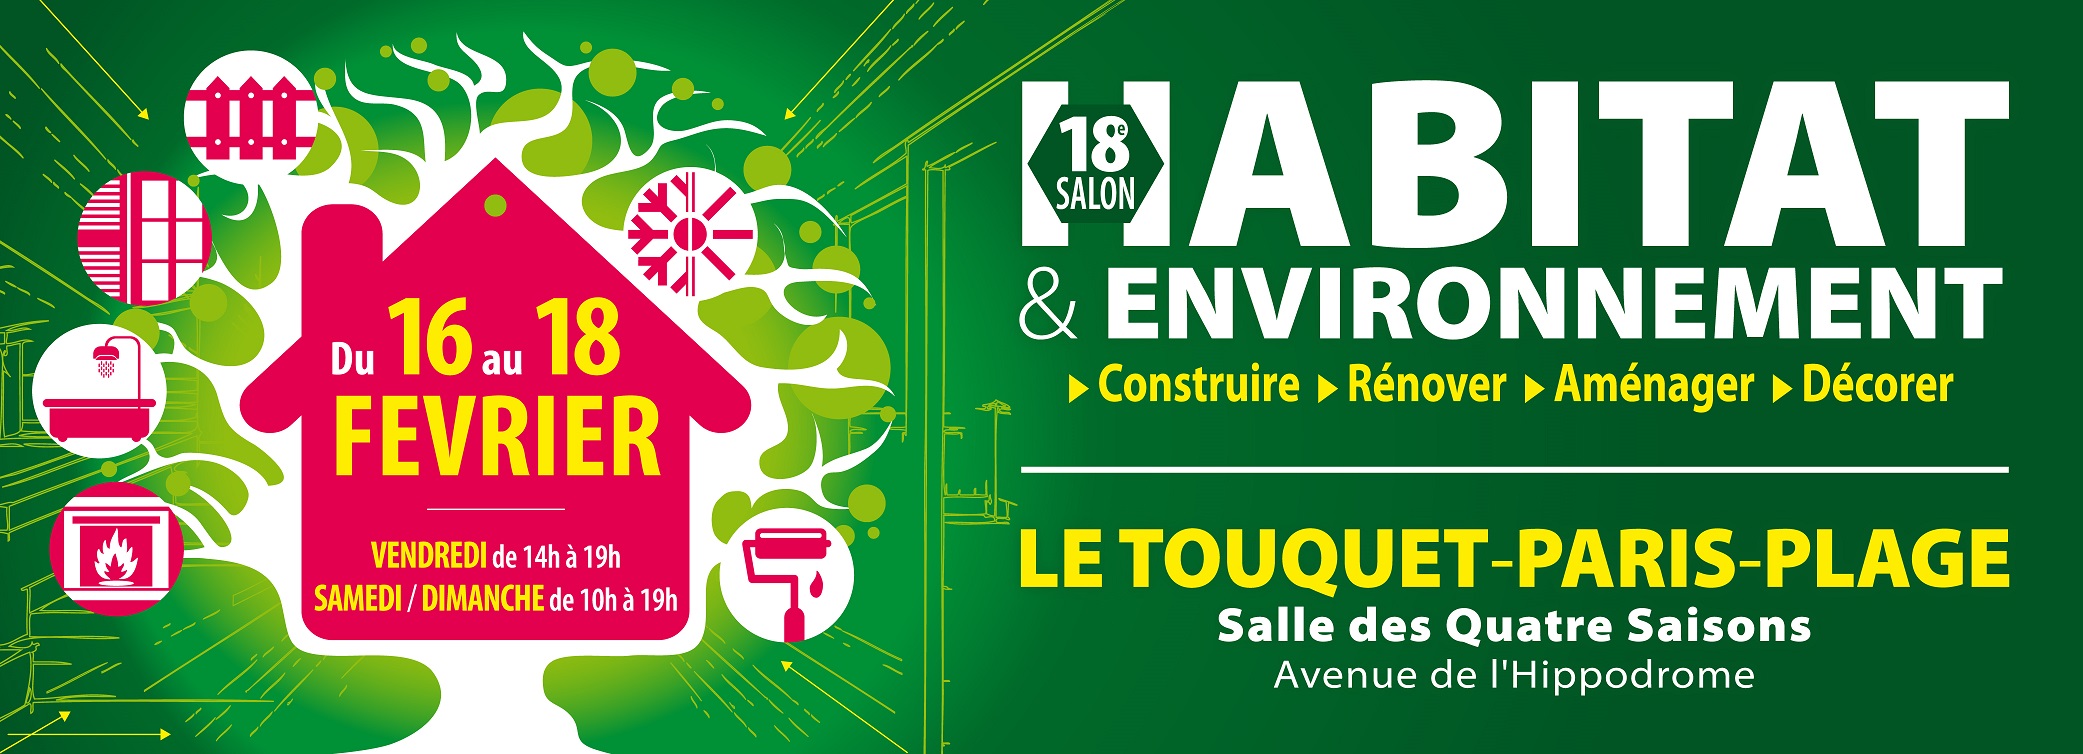 Salon de l'habitat et de l'environnement au Touquet